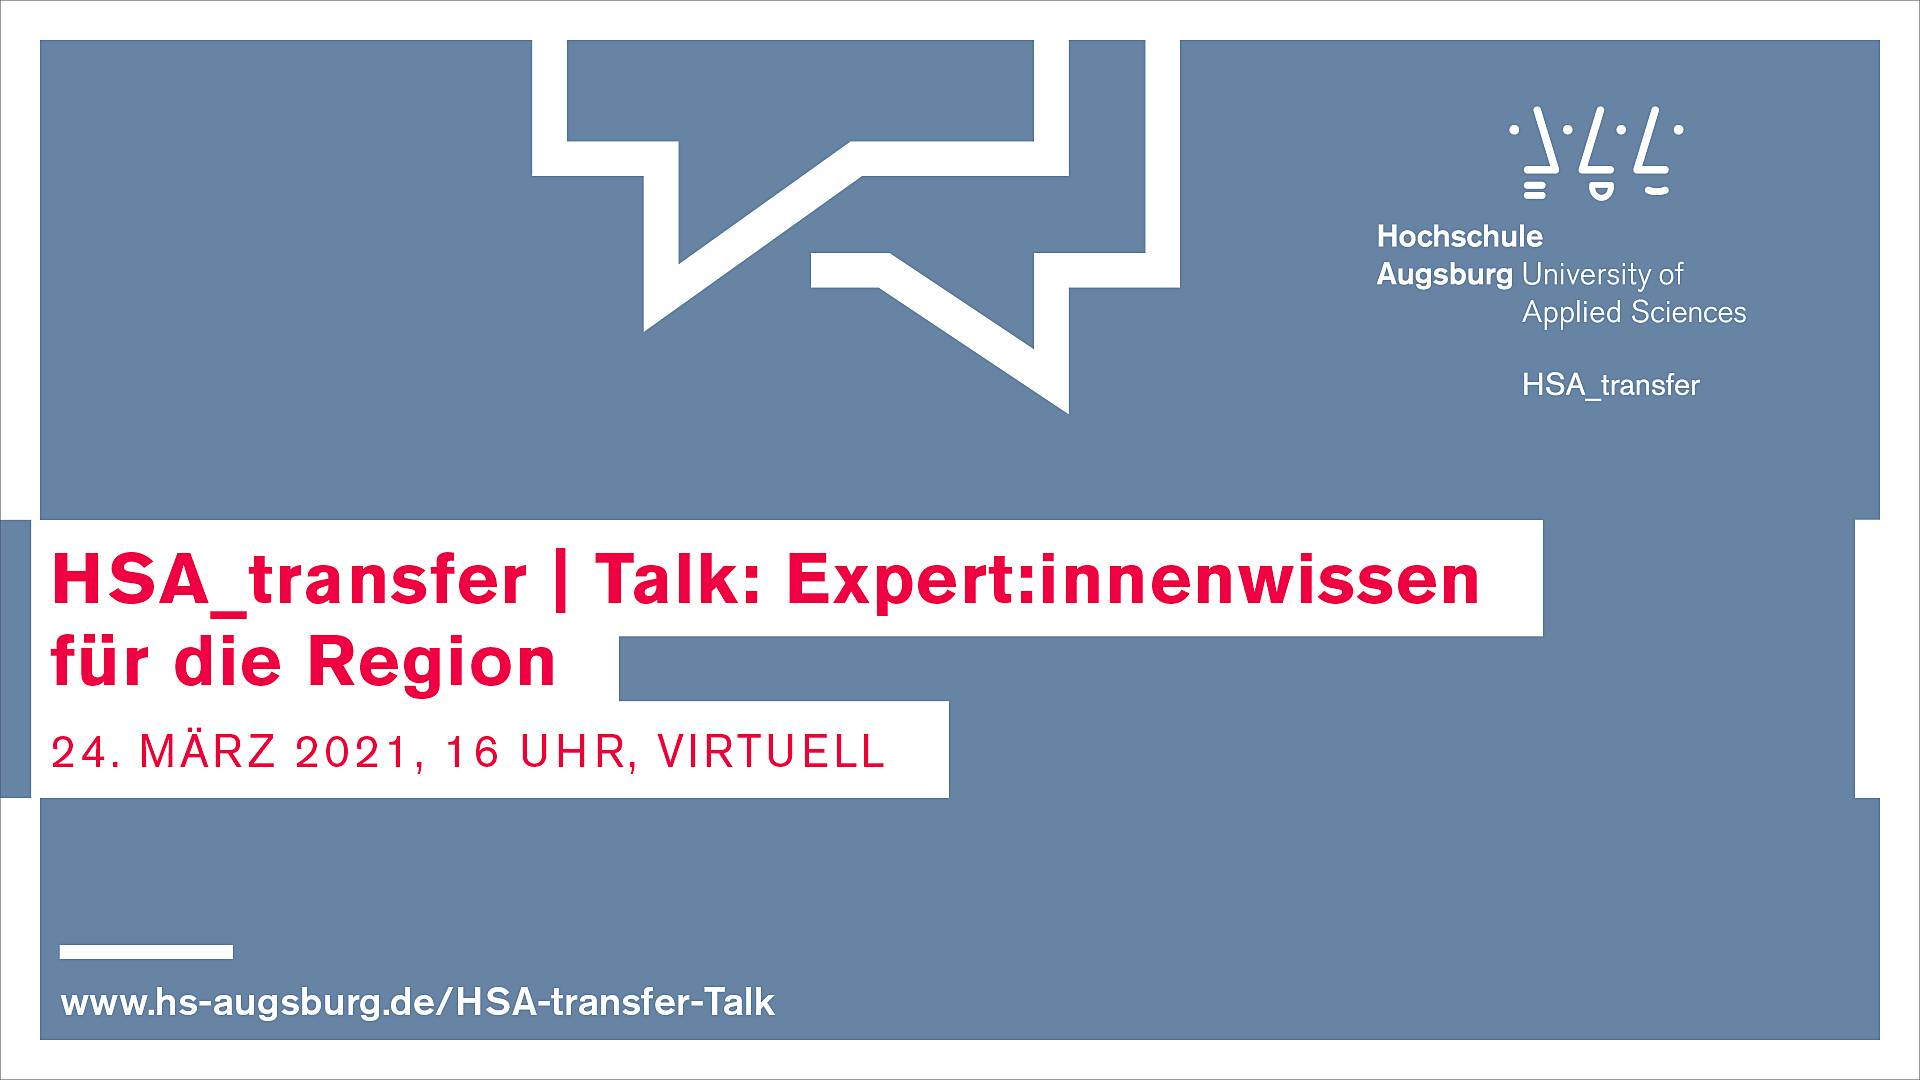 Banner: HSA_transfer | Talk: Expert:innewissen für die Region